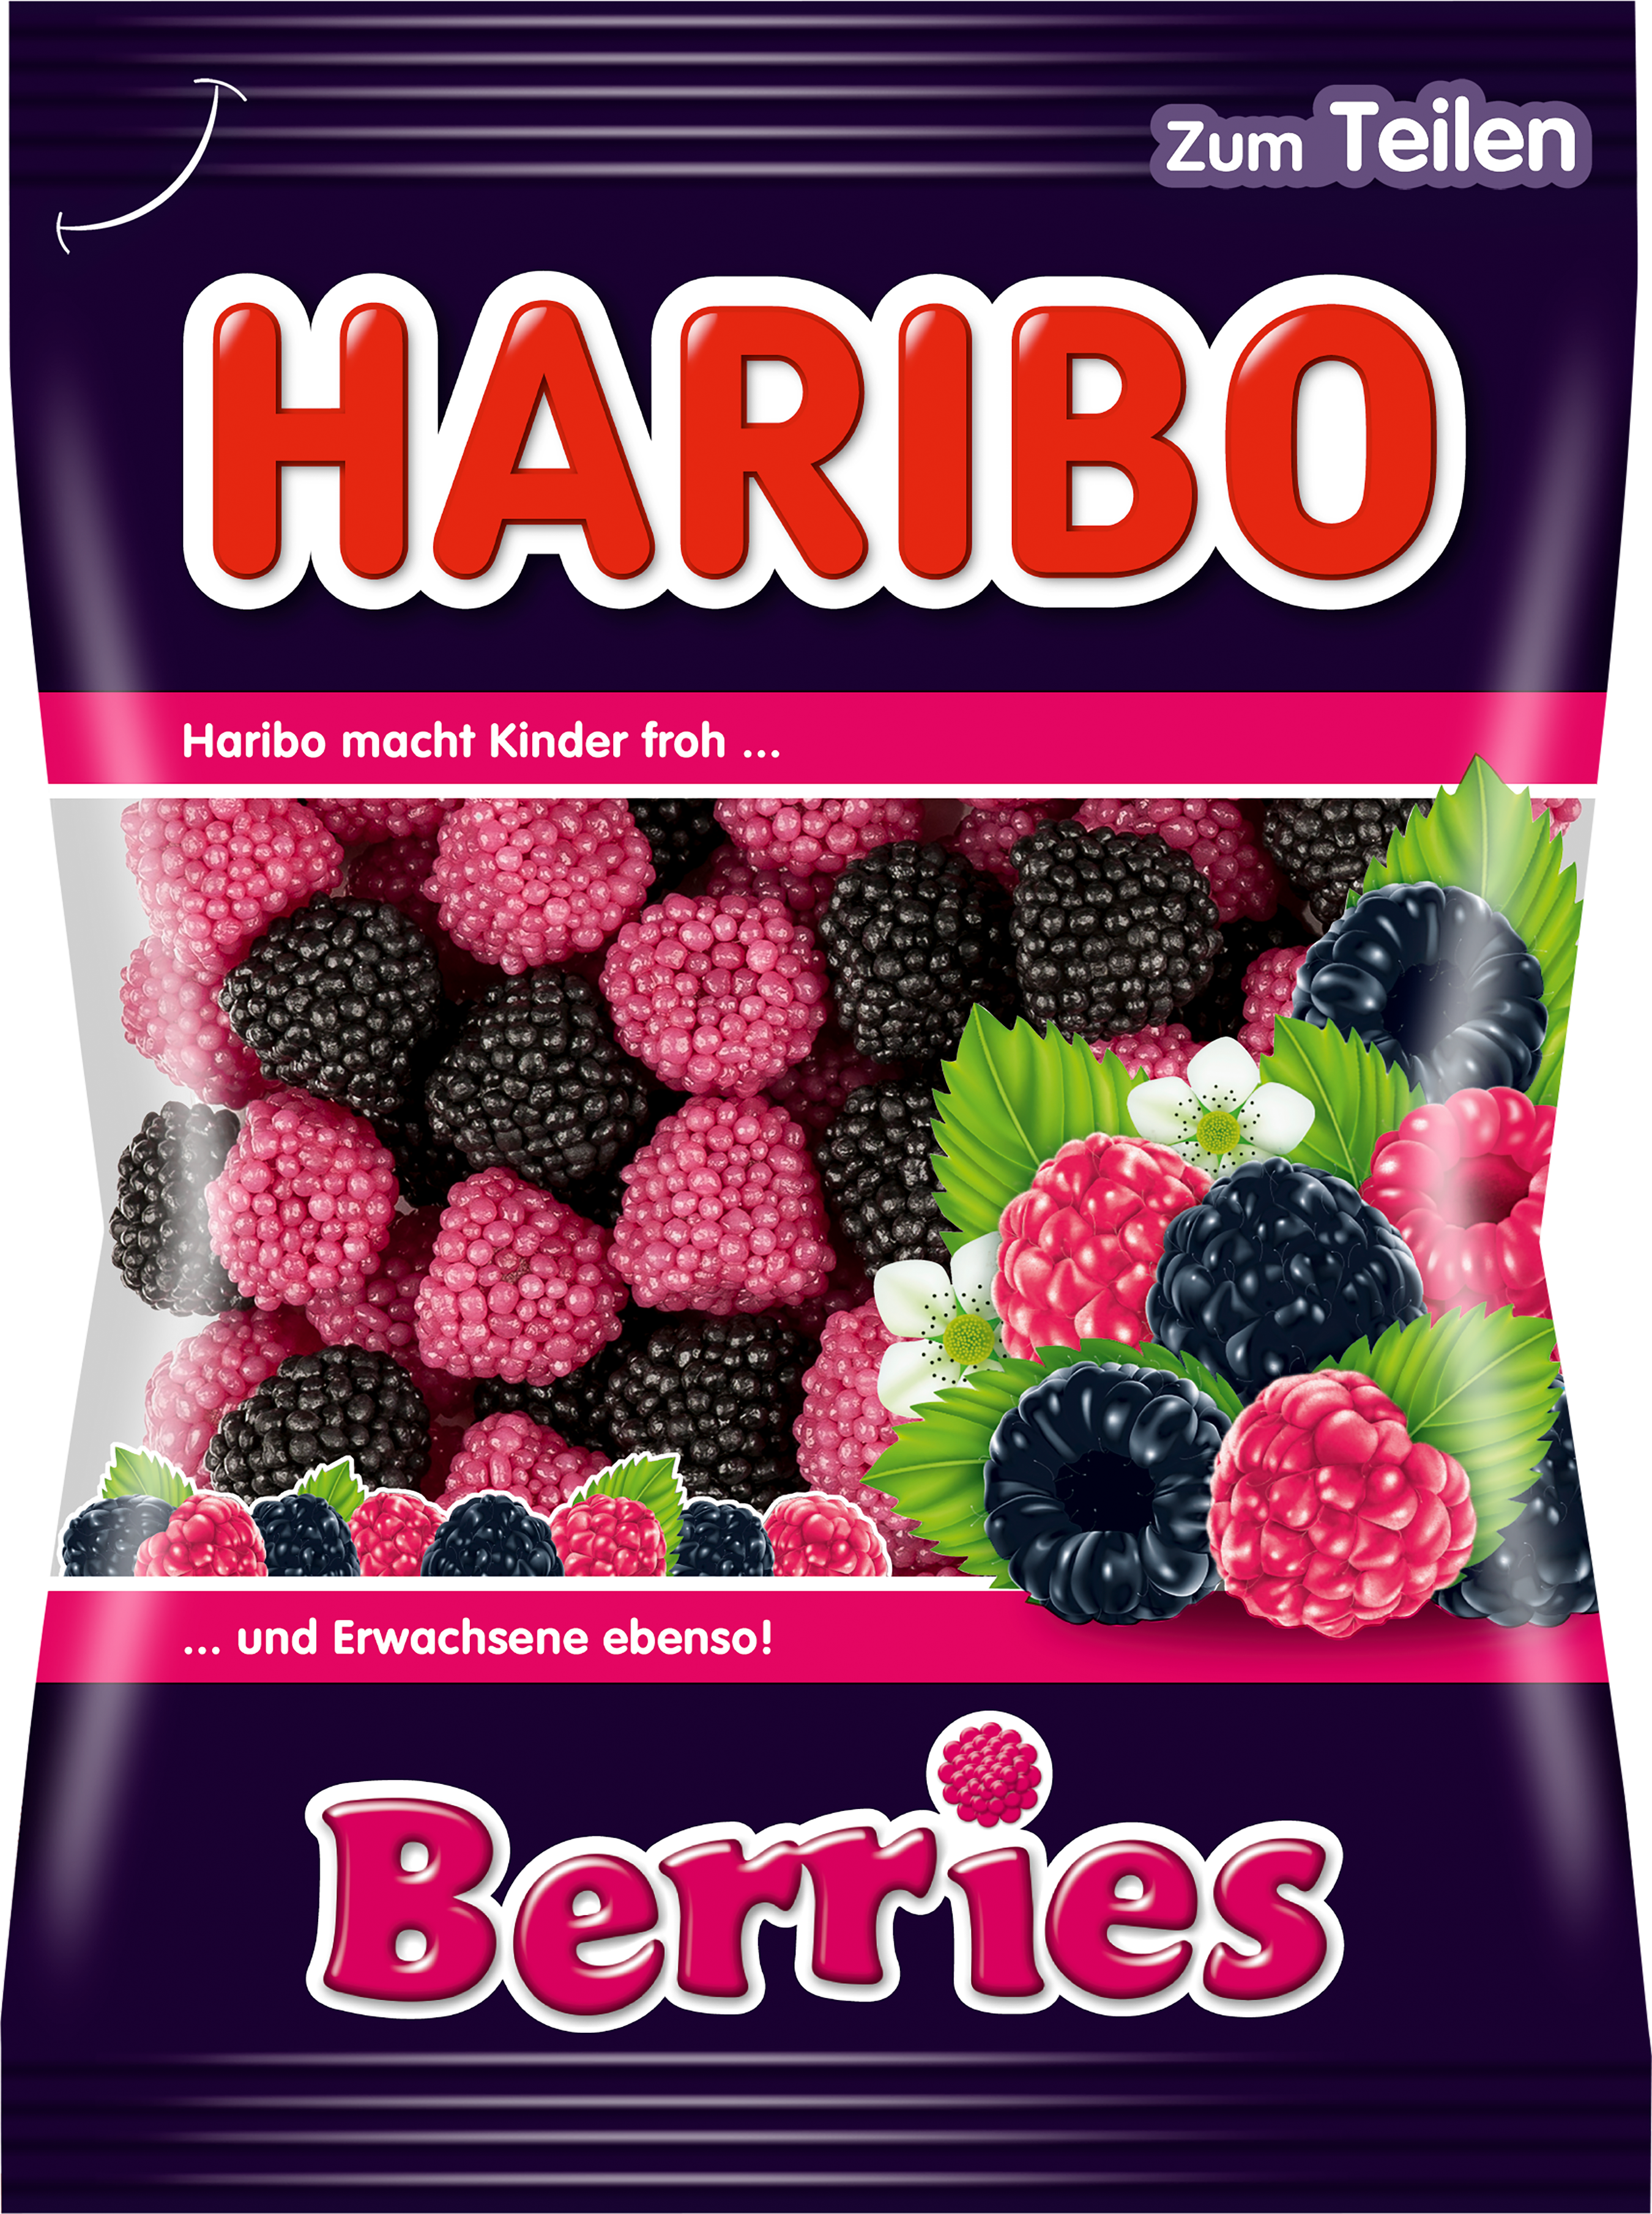 Beutel HARIBO Berries (200g)